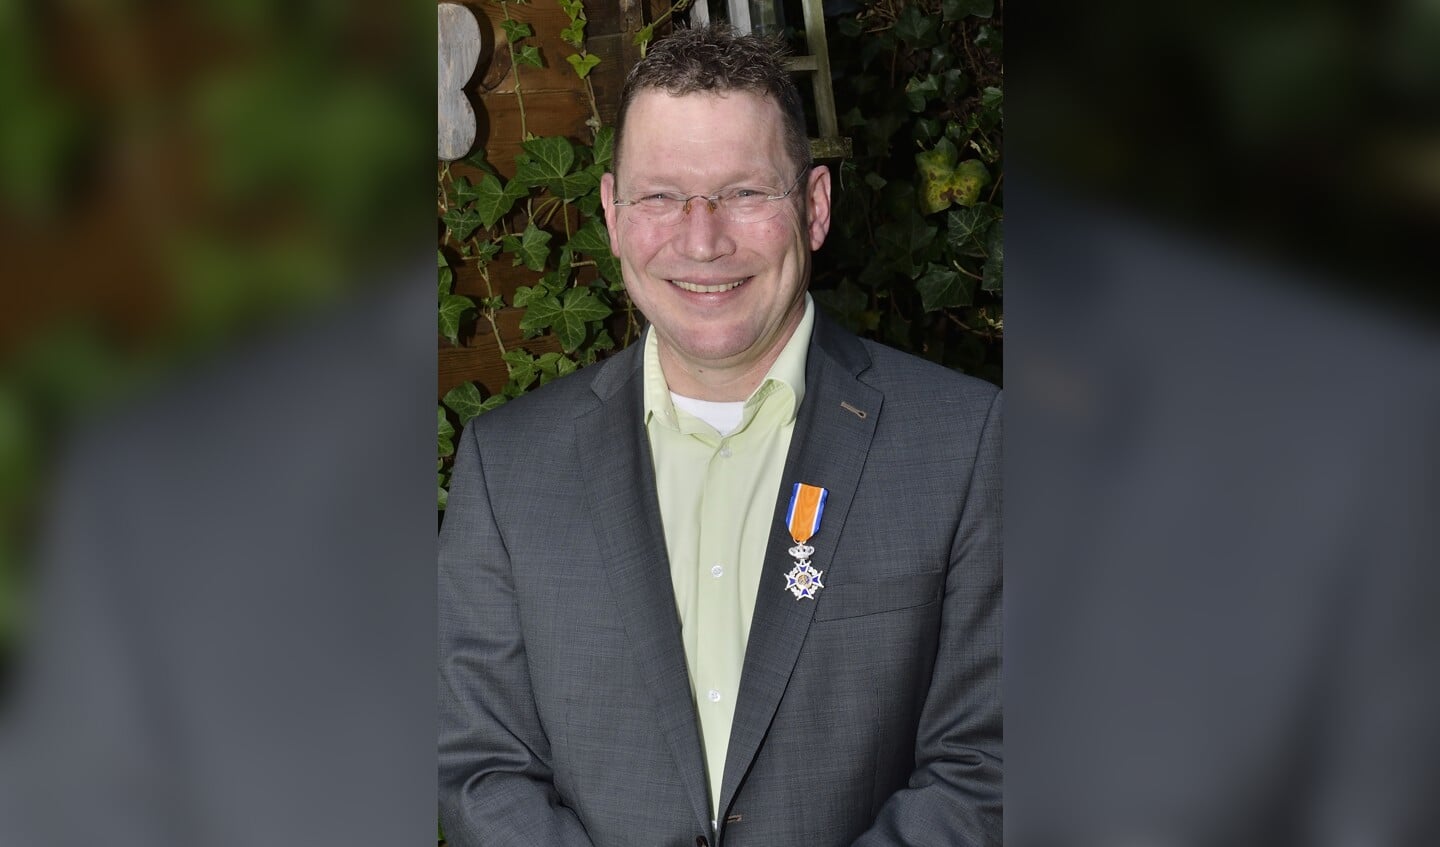 Koninklijke onderscheiding voor de heer J.W.M. van Kemenade Benoemd tot lid in de Orde van Oranje-Nassau